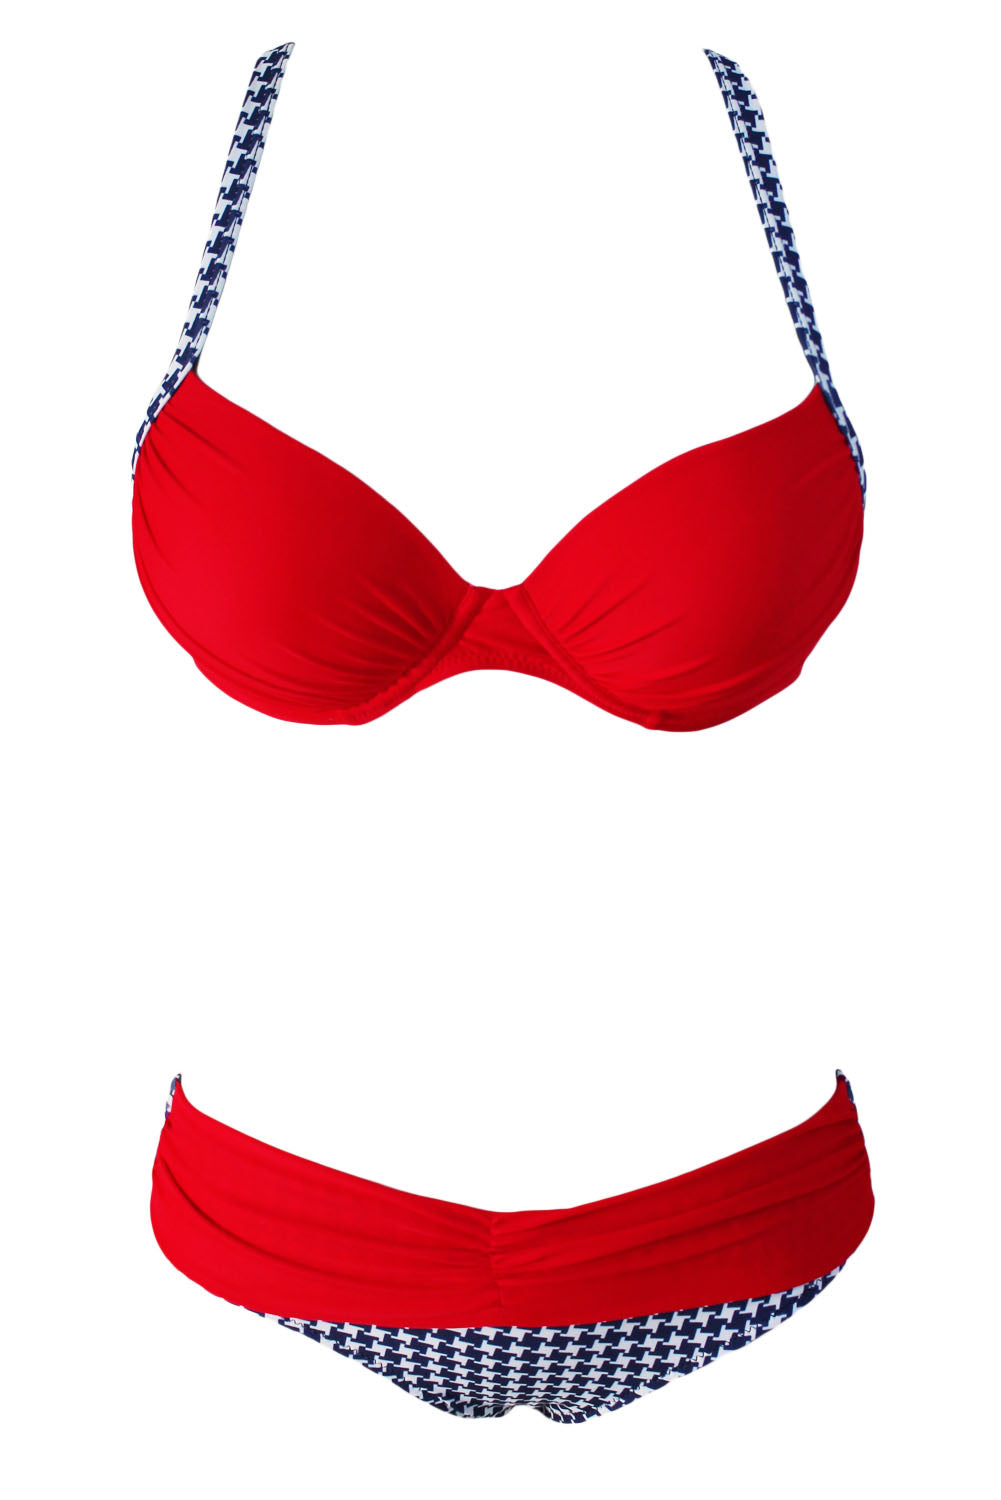 Sexy Red Padded Gather Push-up Bikini Set Bikinis KevenKosh® 